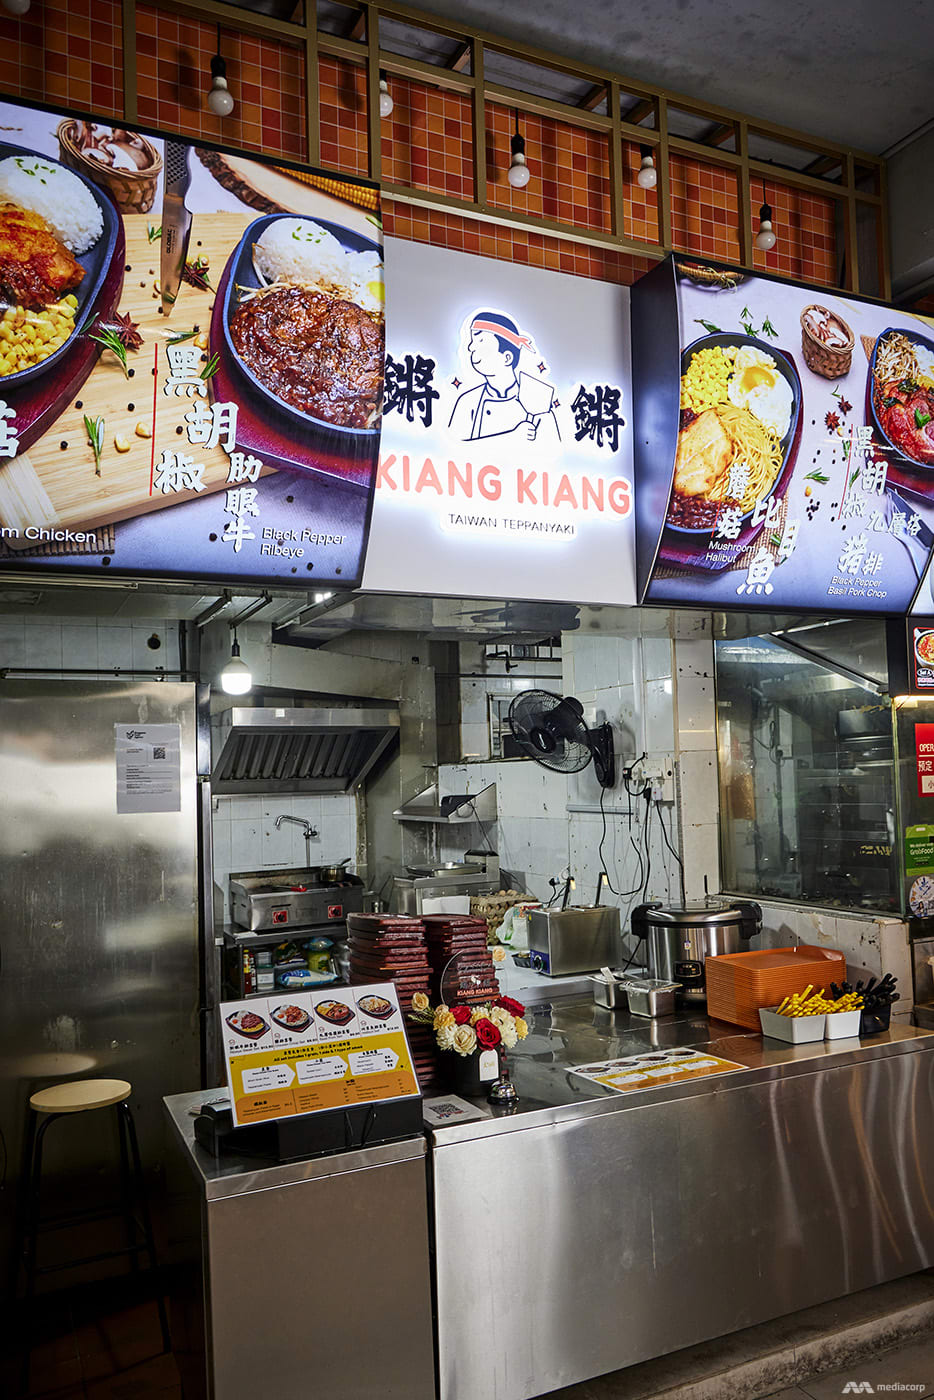 2_kiang_kiang_taiwan_teppanyaki_western_food_stall.jpeg